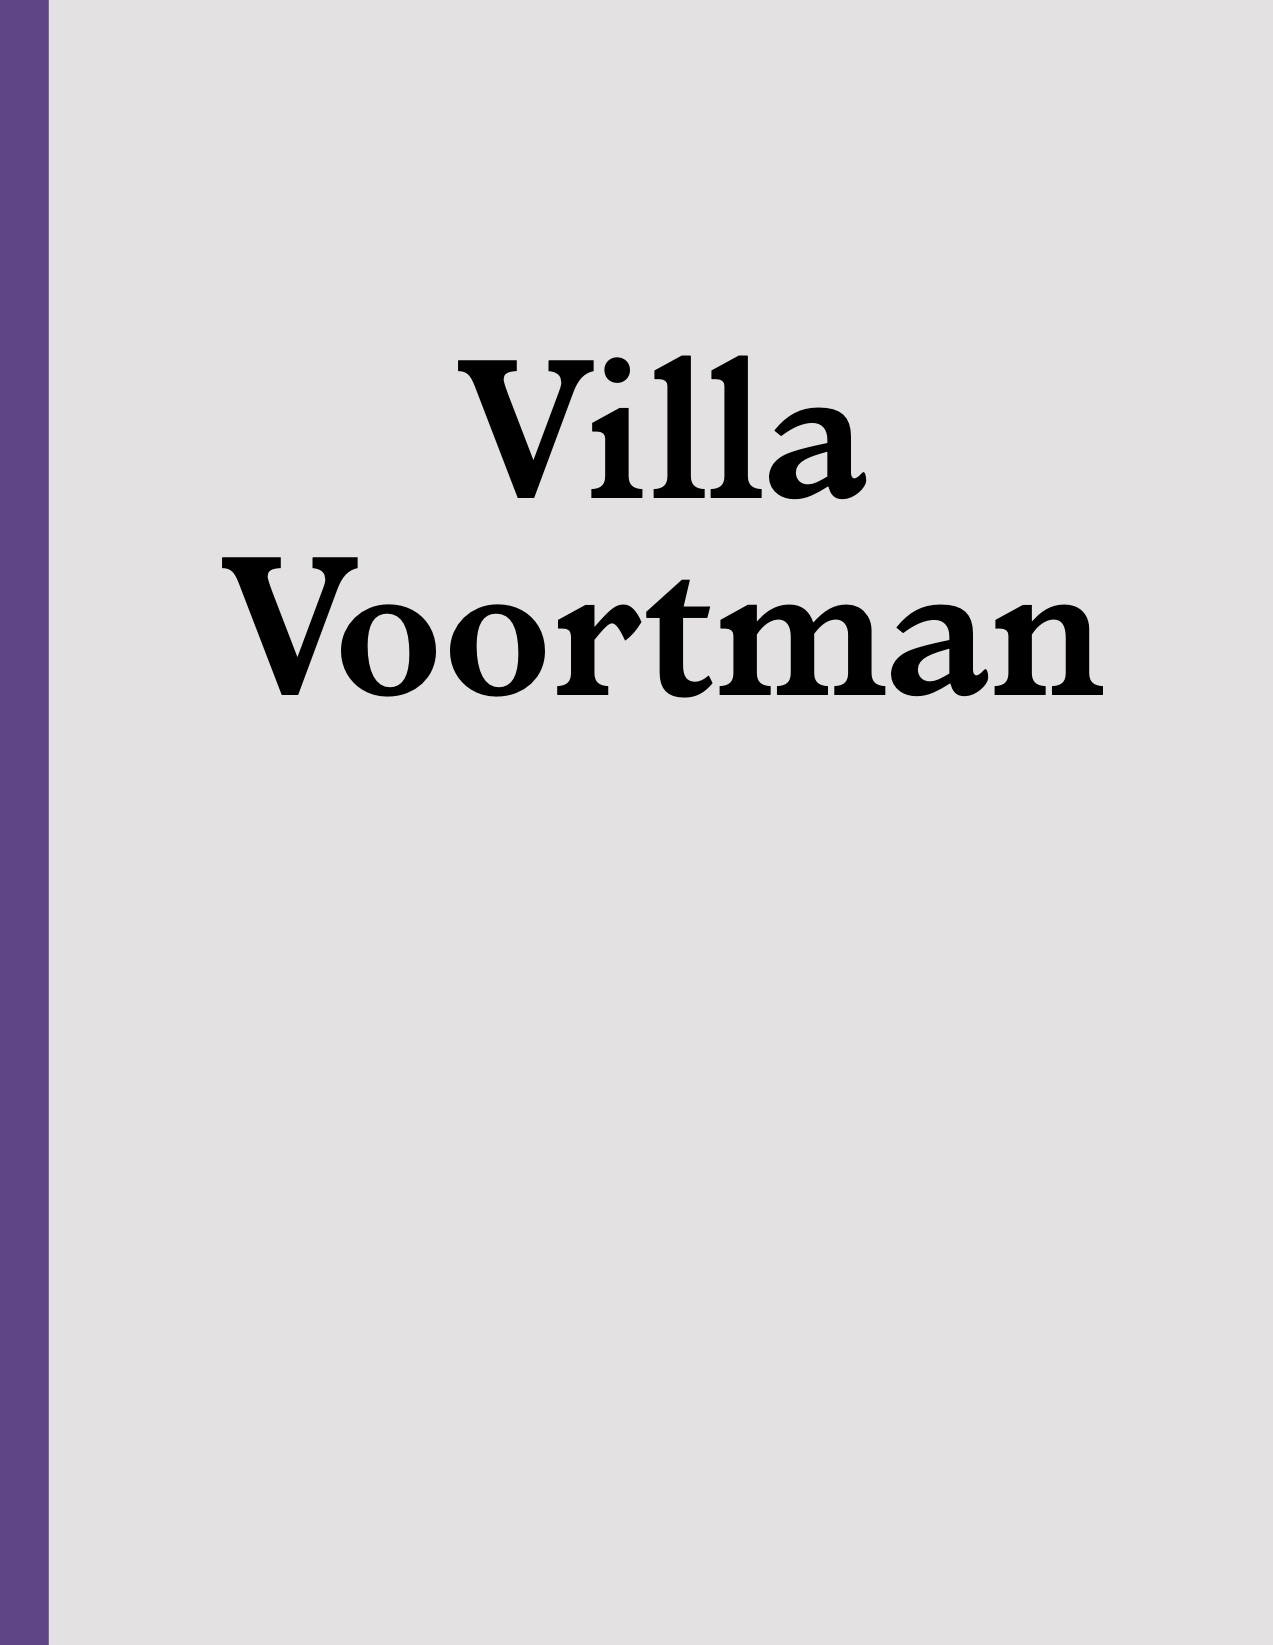 Villa Voortman